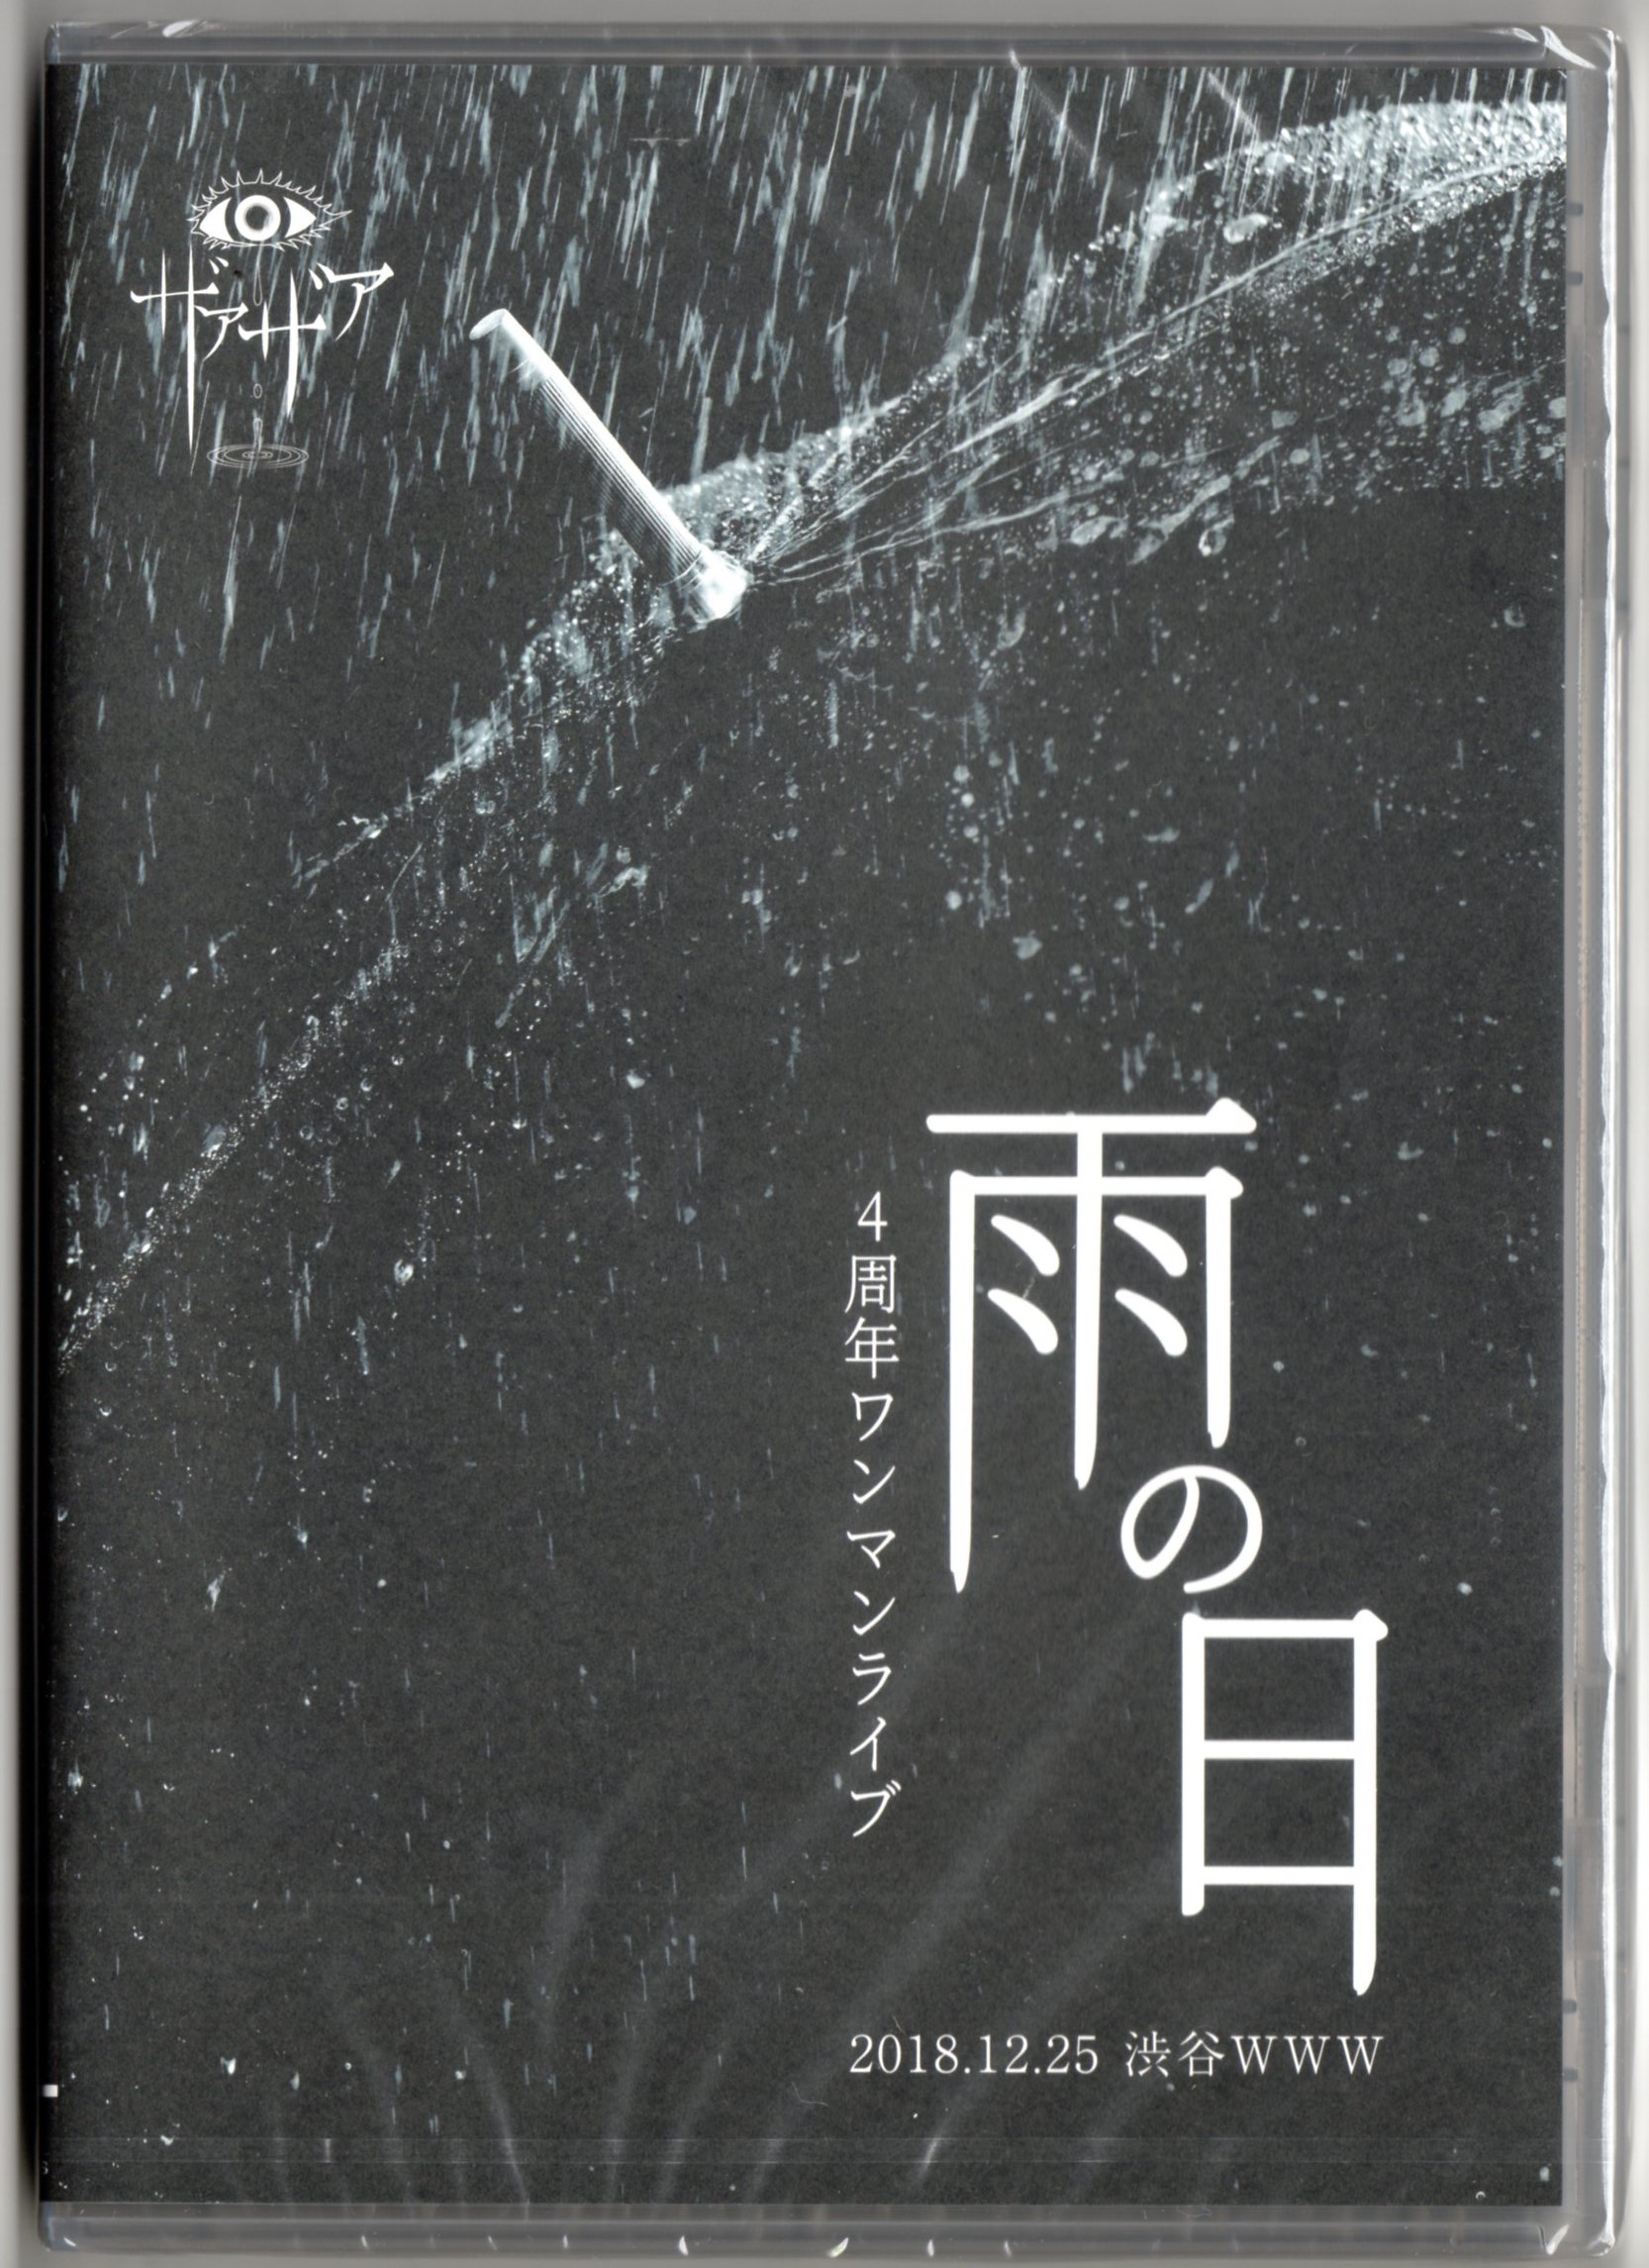 ザアザア ( ザアザア )  の DVD 4周年ワンマンライブ「雨の日」 2018.12.25渋谷WWW